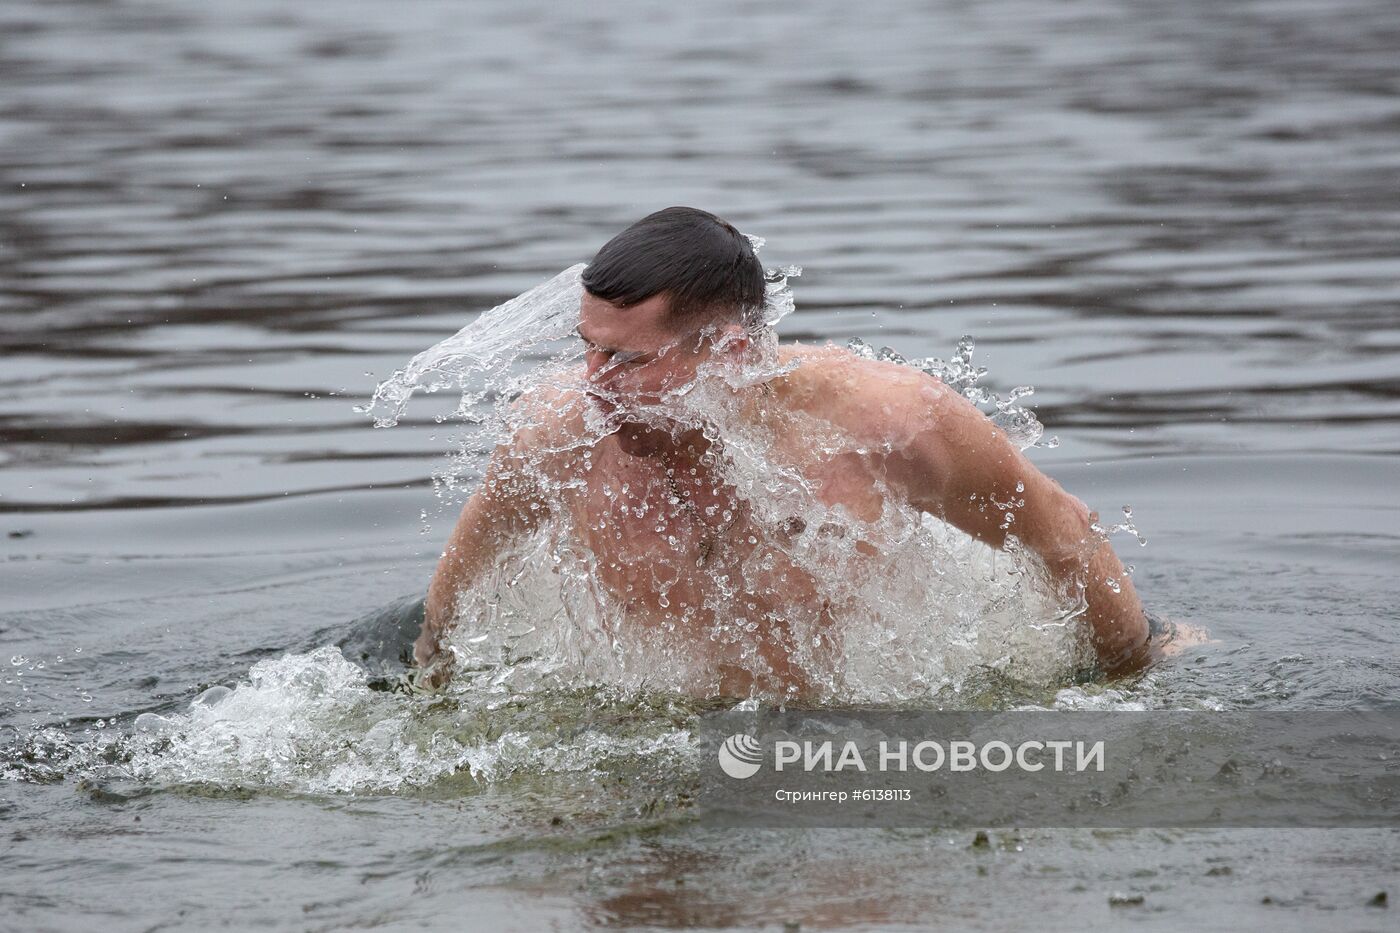 Празднование Крещения на Украине